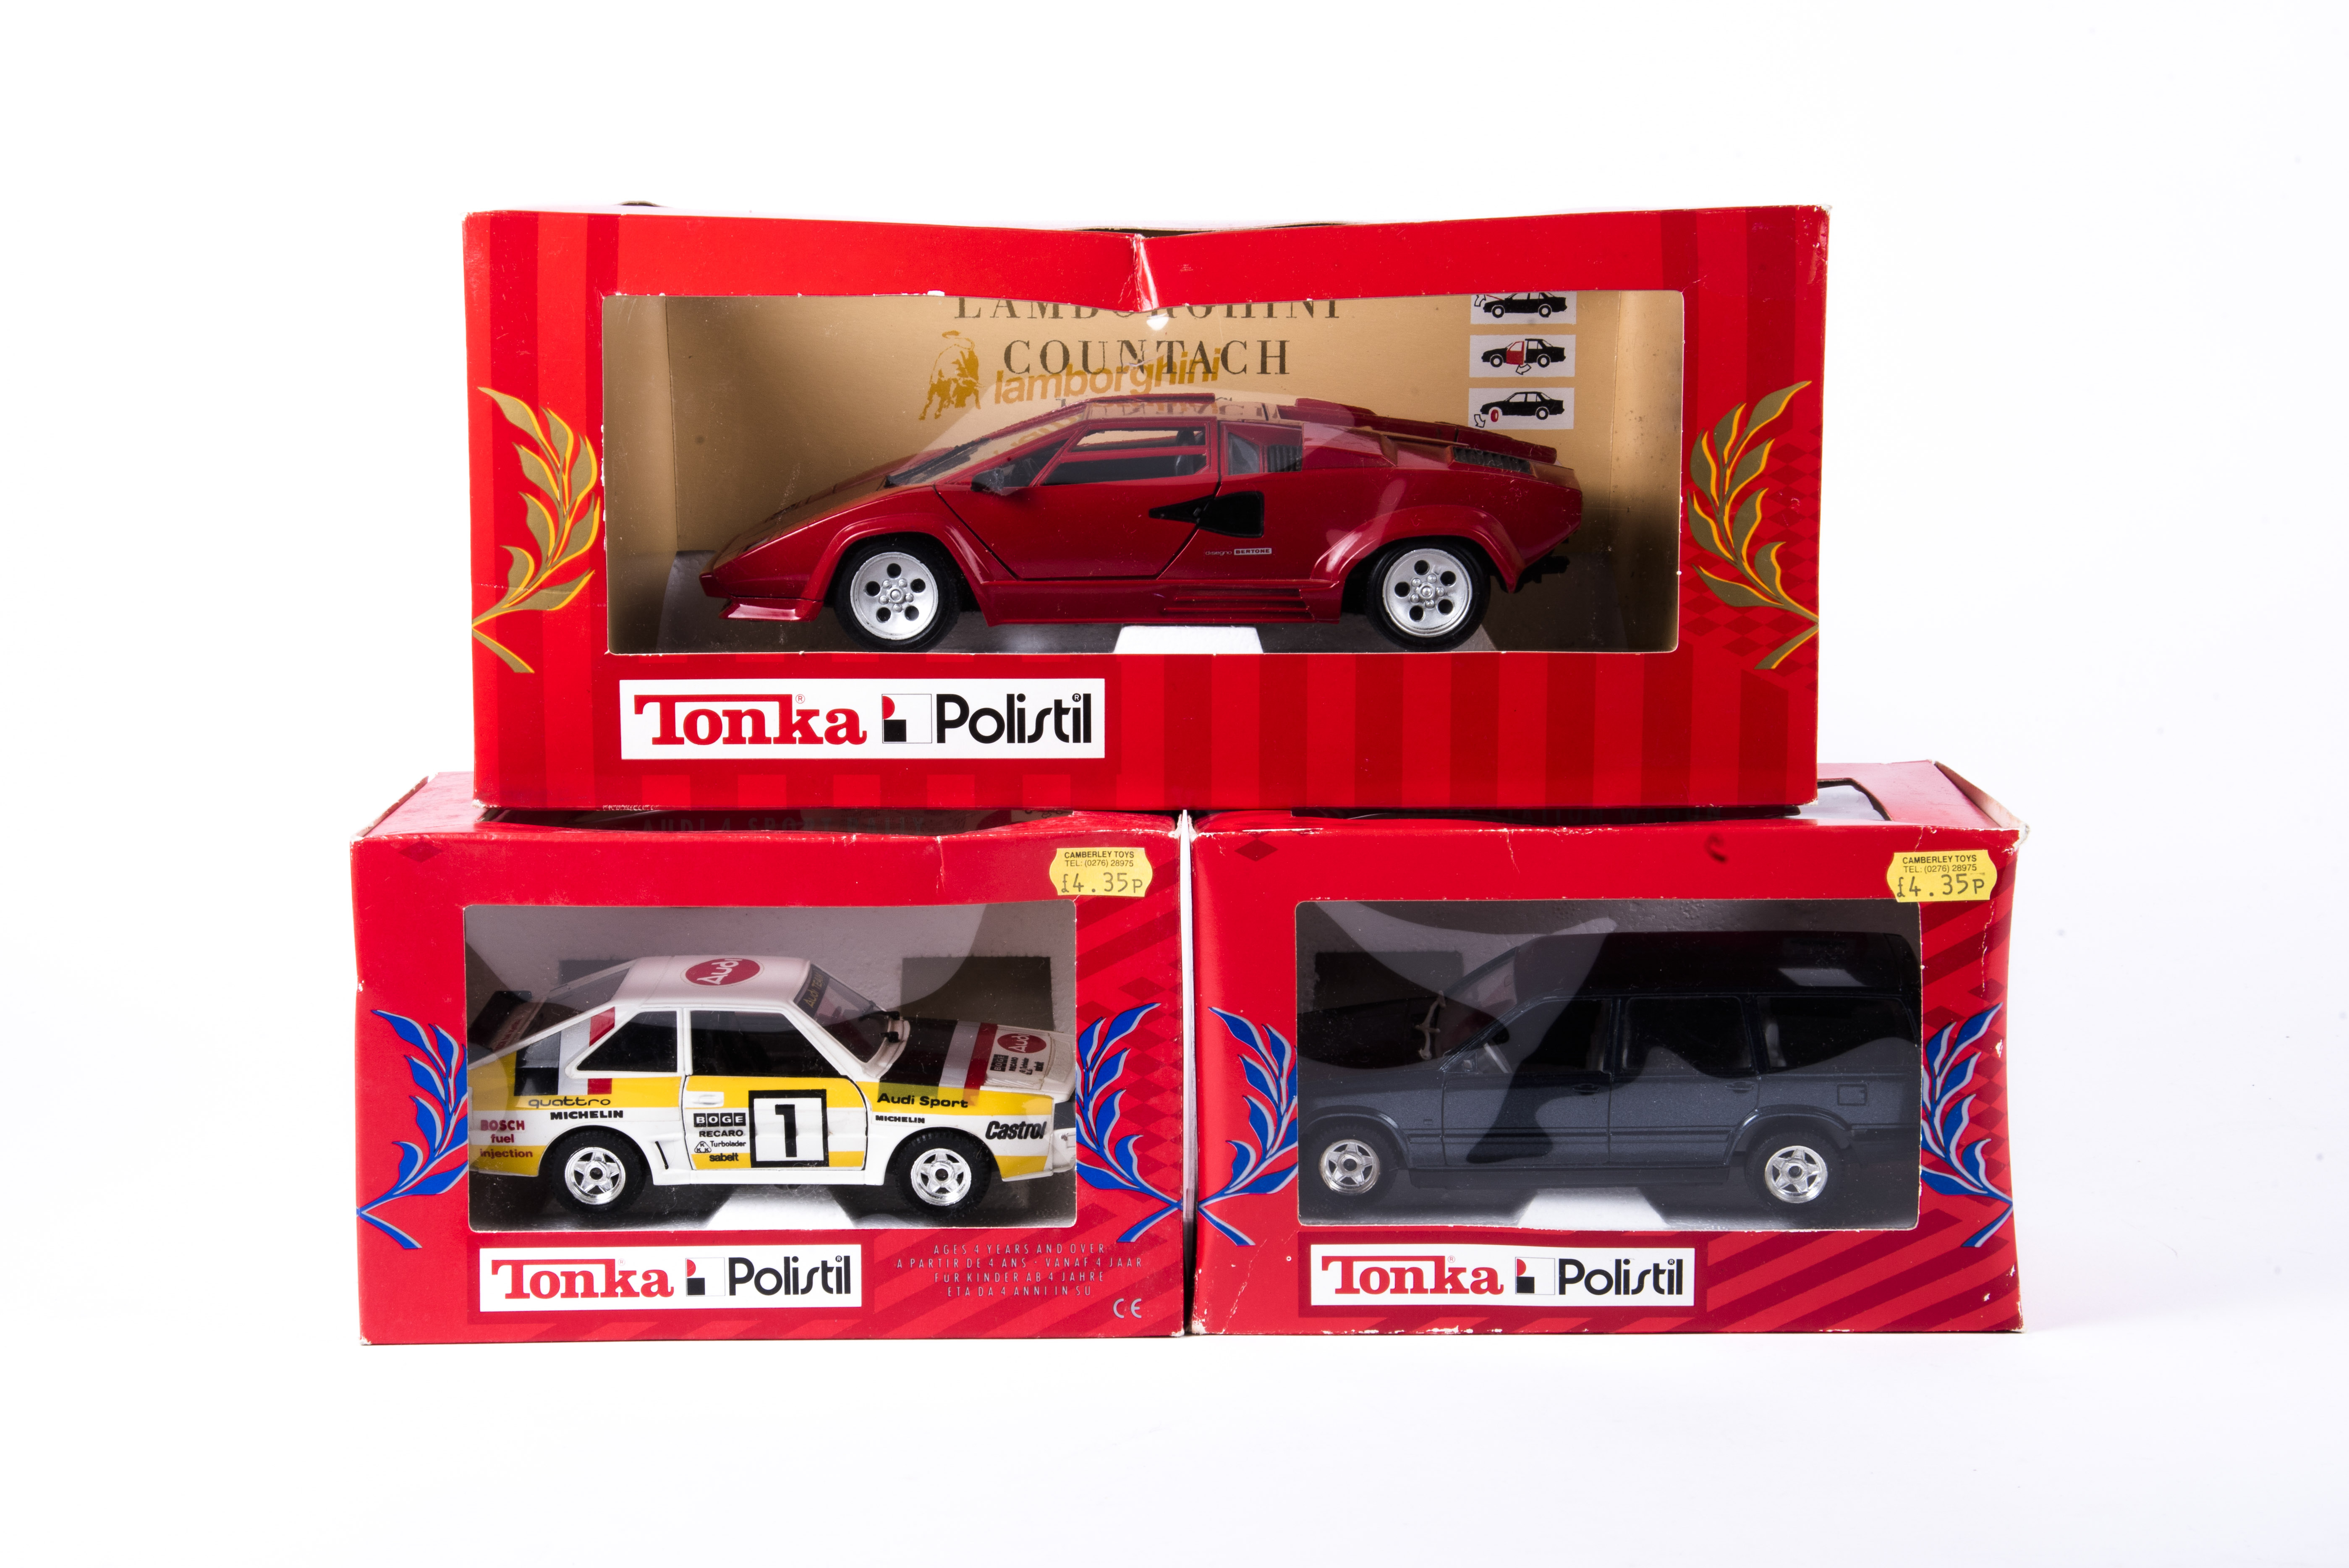 10x 1:25 and 1:16 scale cars by Tonka Polistil and Bburago. 8x 1:25 scale Polistil cars; Aston